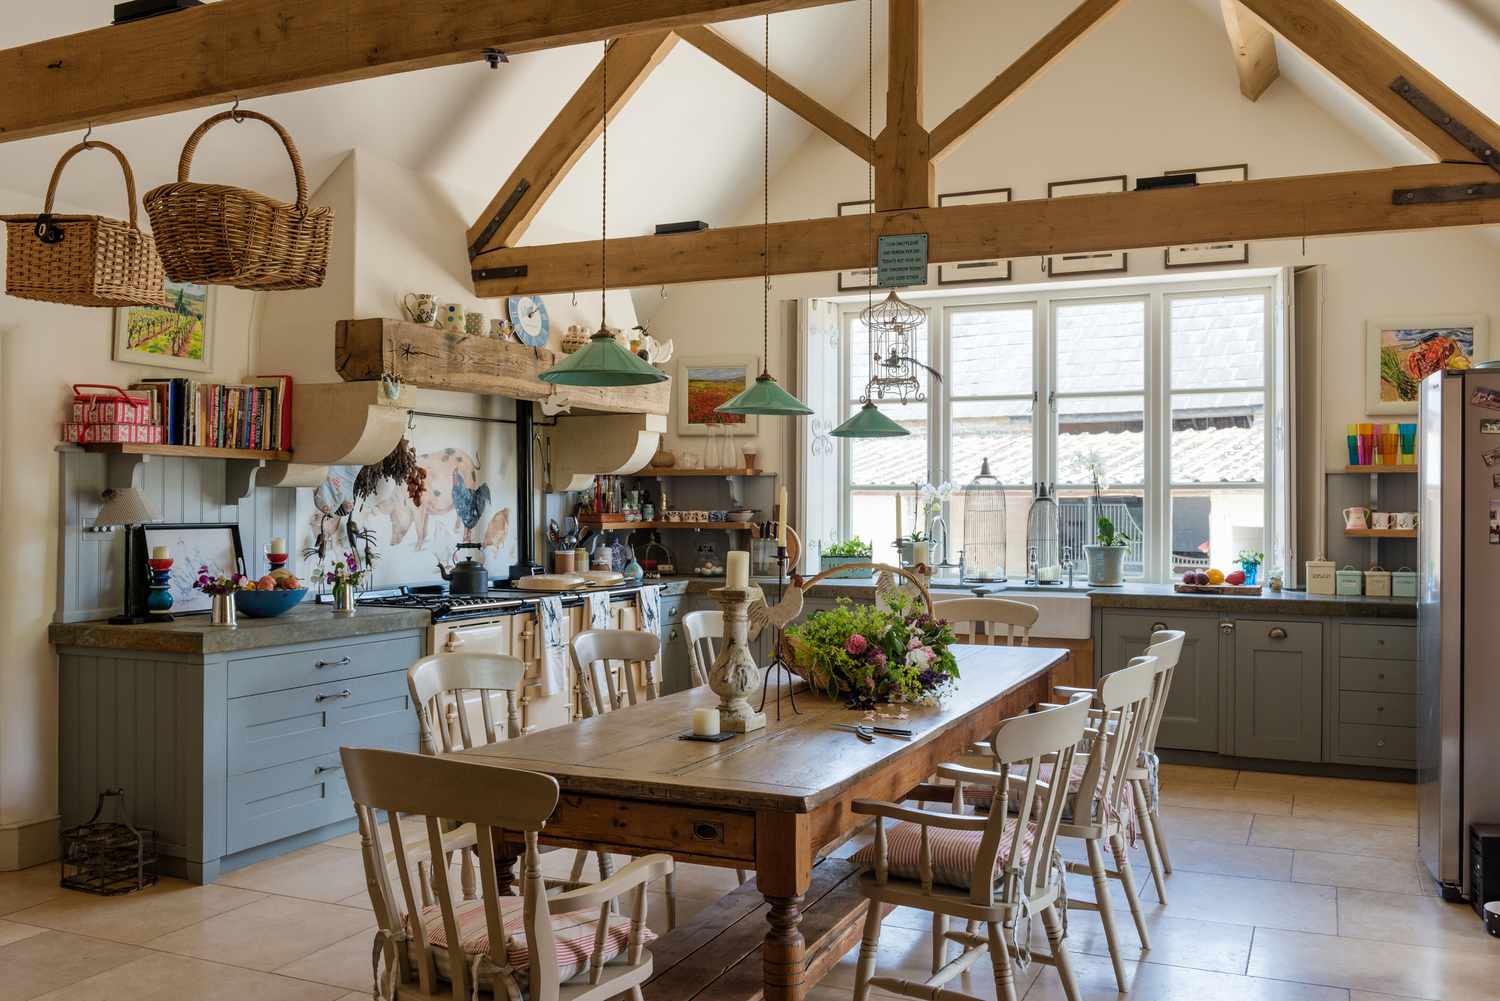 Mesa de fazenda vintage em uma cozinha rústica com luzes pendentes verdes da Holloways of Ludlow, aga e teto com vigas